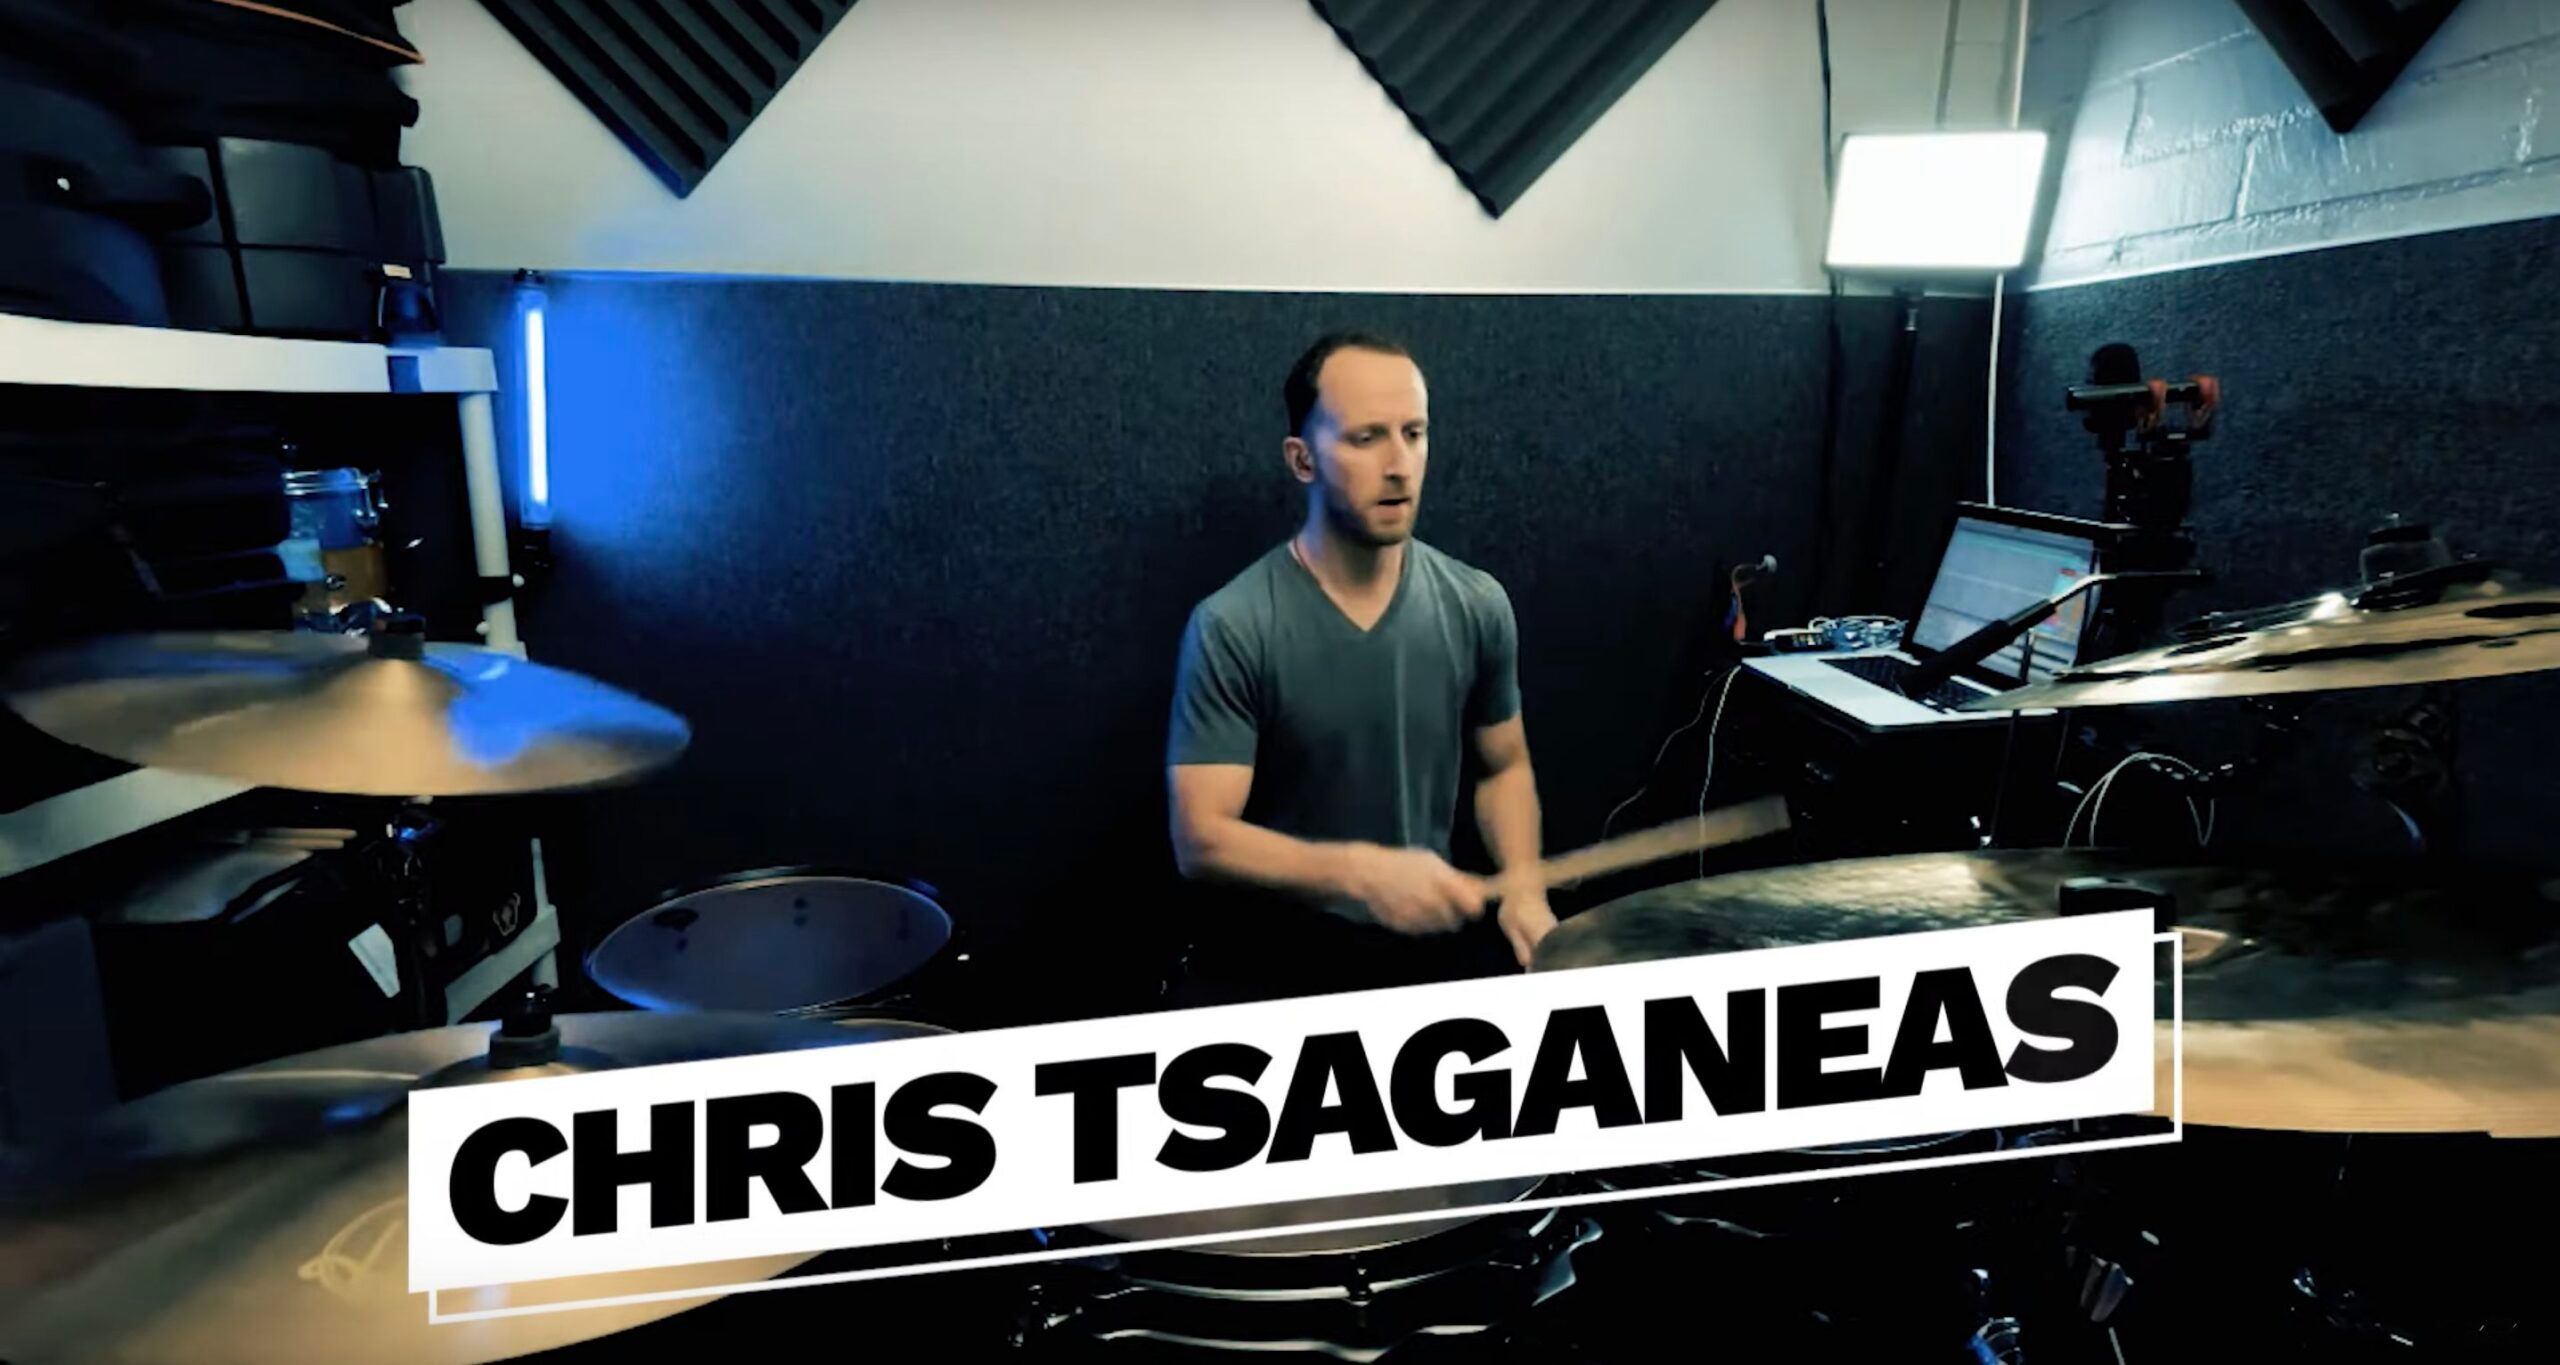 Chris Tsaganeas als neuer Drummer bestätigt